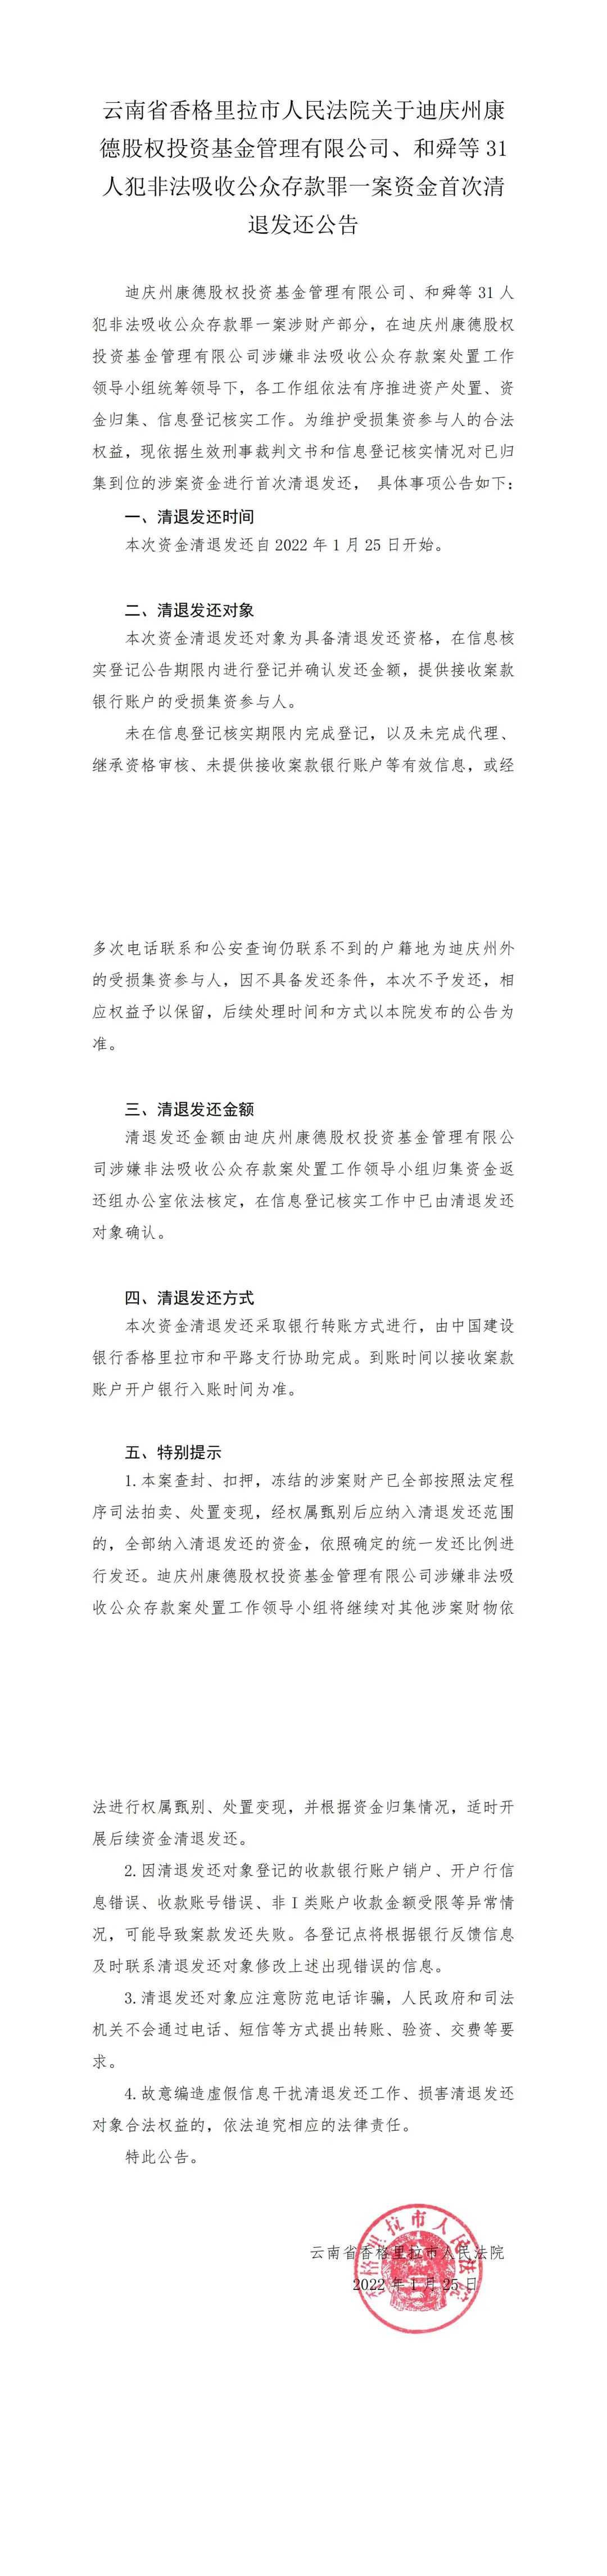 云南省香格里拉市人民法院关于迪庆州康德股权投资基金管理有限公司